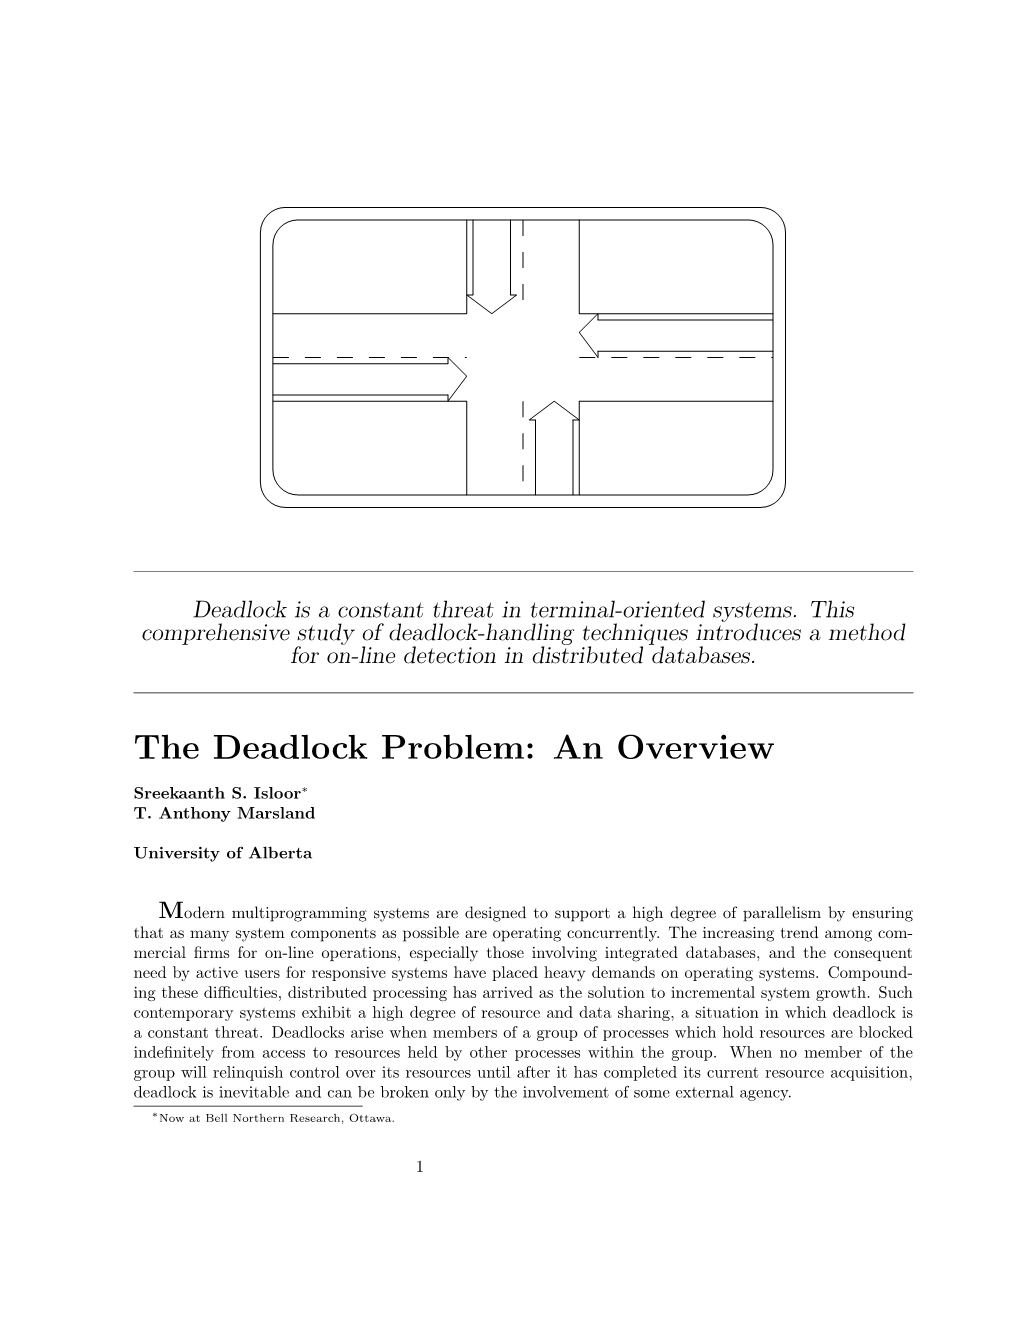 The Deadlock Problem: an Overview